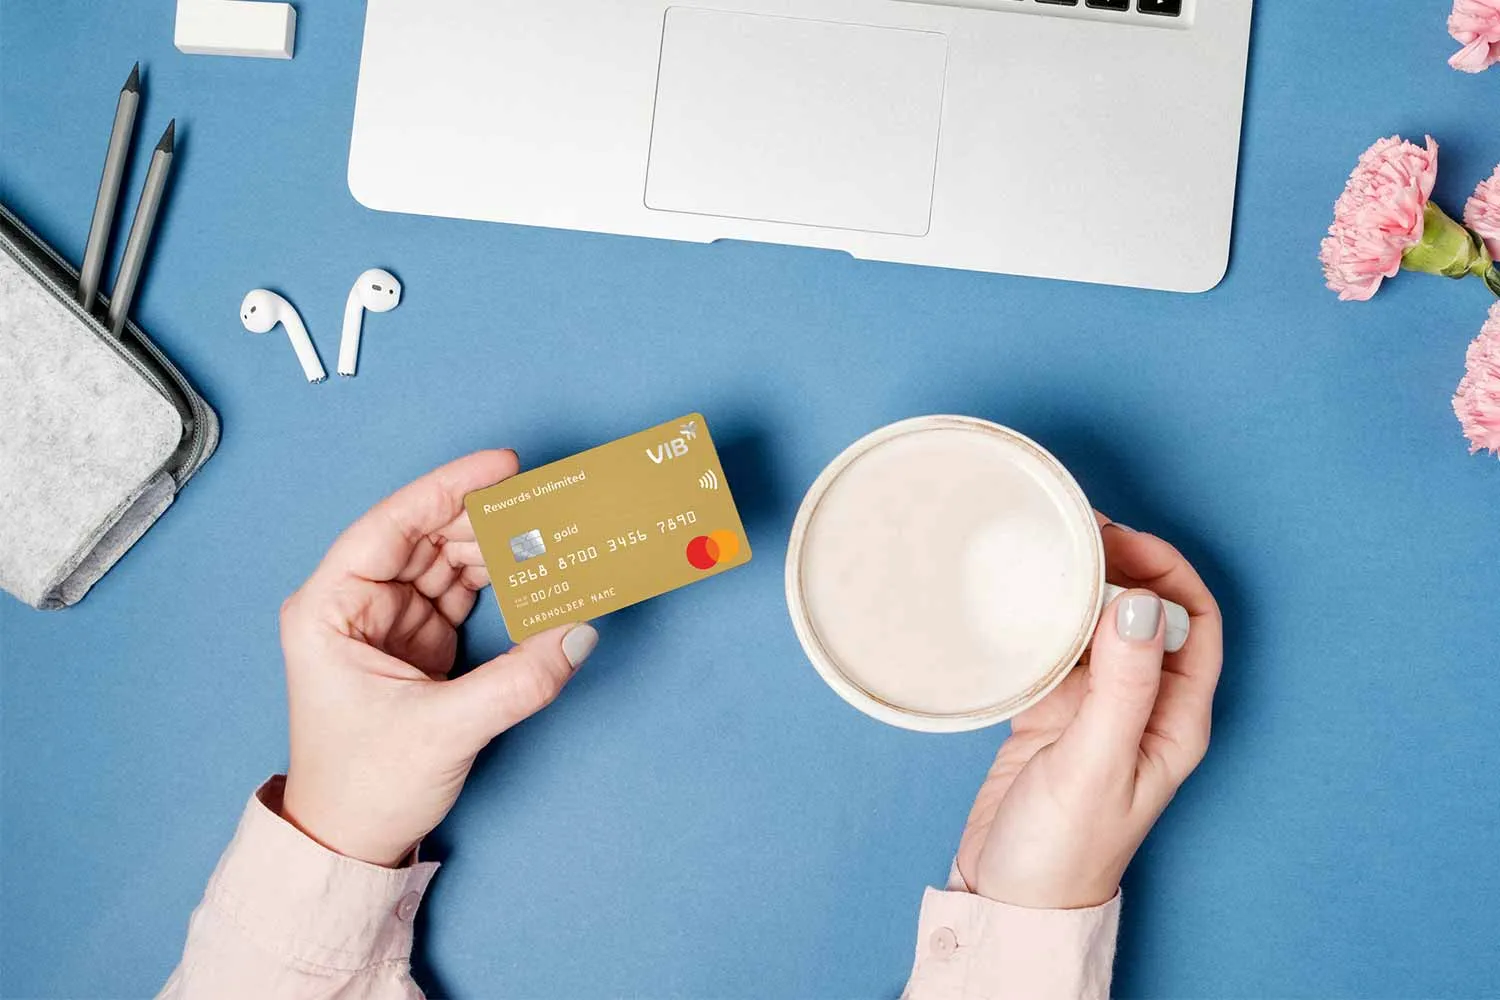 Nguy cơ mất thẻ tín dụng là điều bạn cần lưu ý khi sử dụng